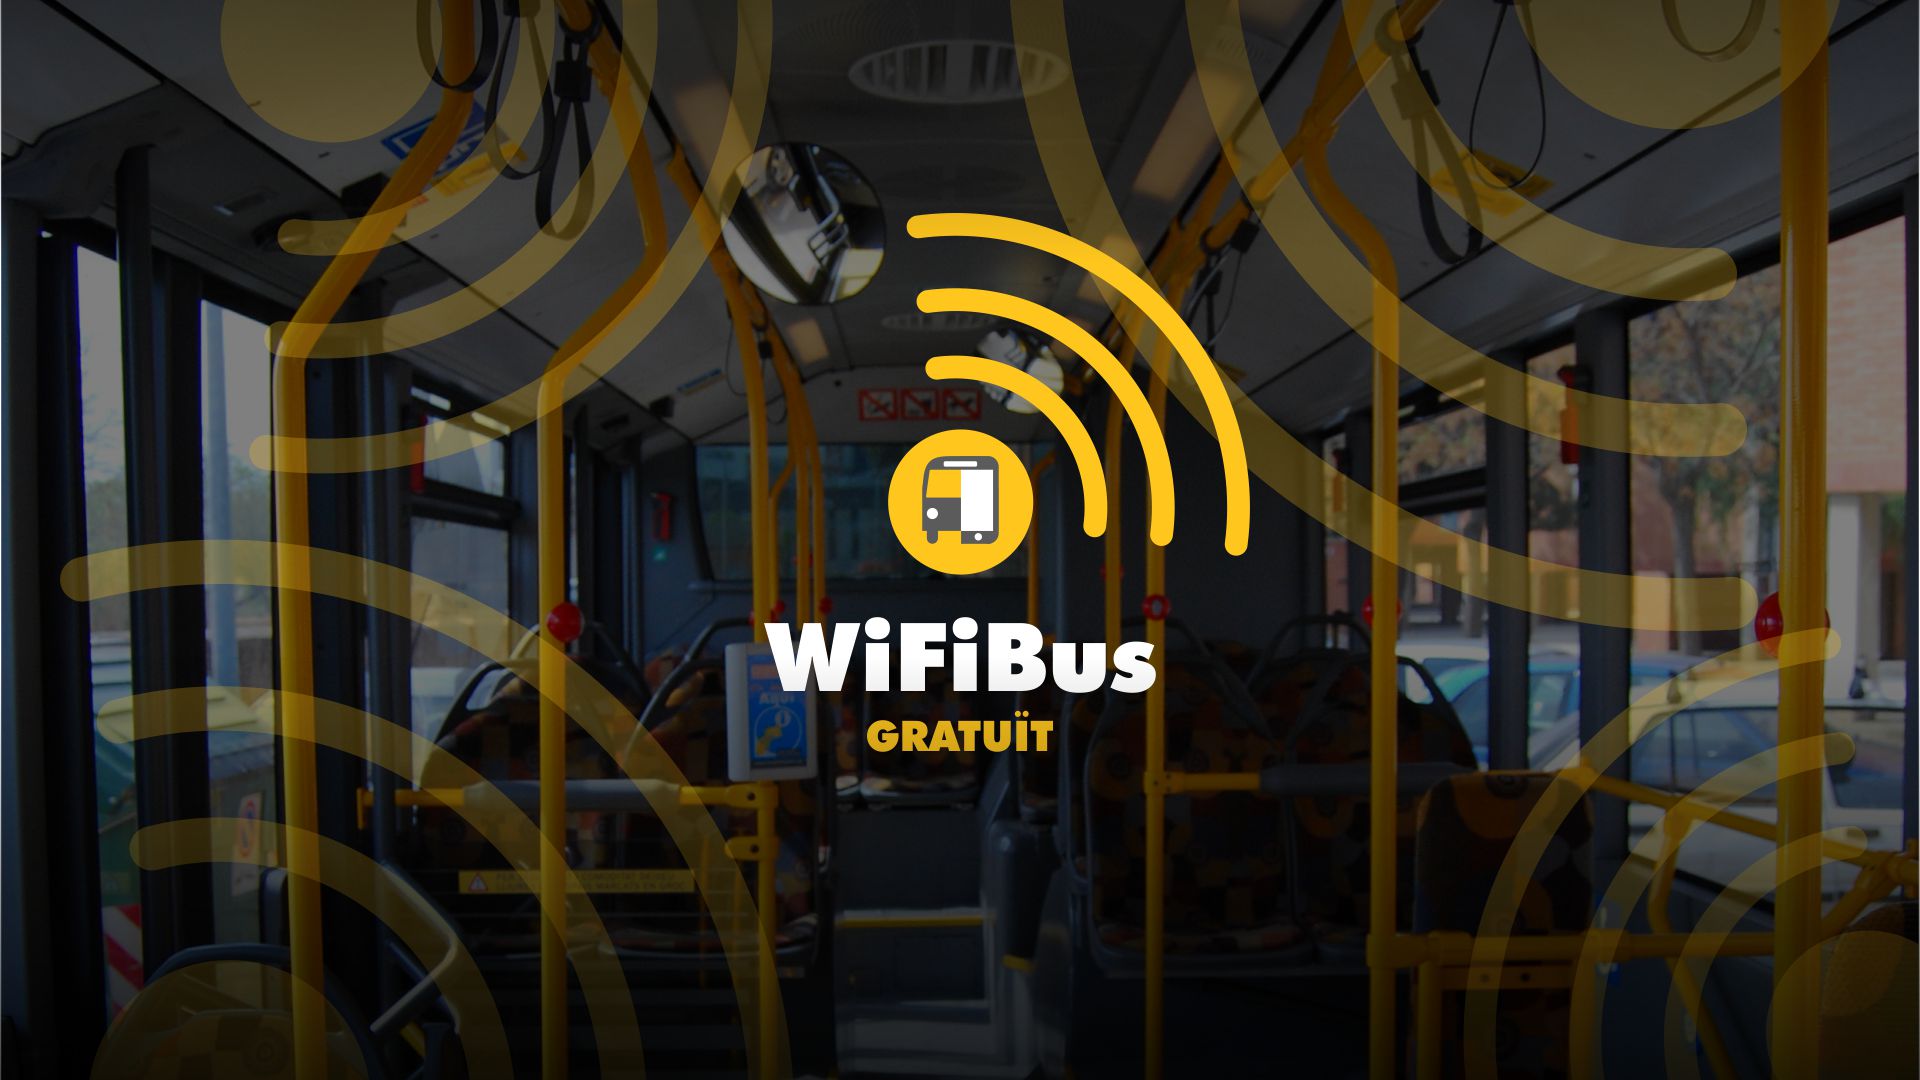 Reus Transport instal·la wifi gratuït a tots els autobusos